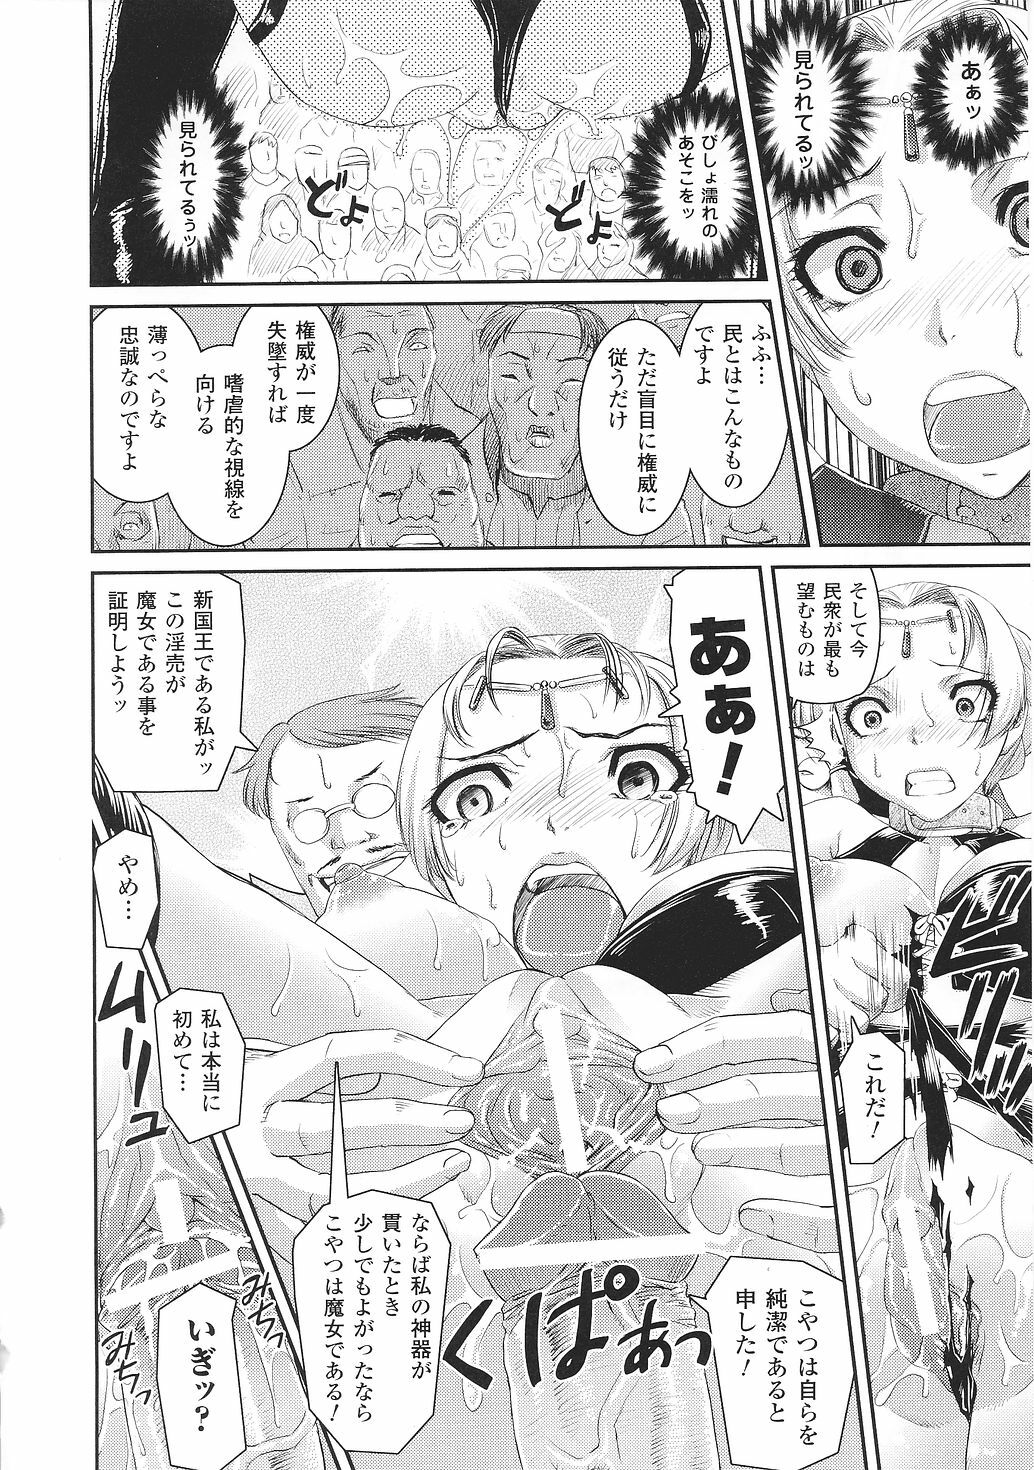 [Anthology] Tatakau Heroine Ryoujoku Anthology Toukiryoujoku 30 page 32 full